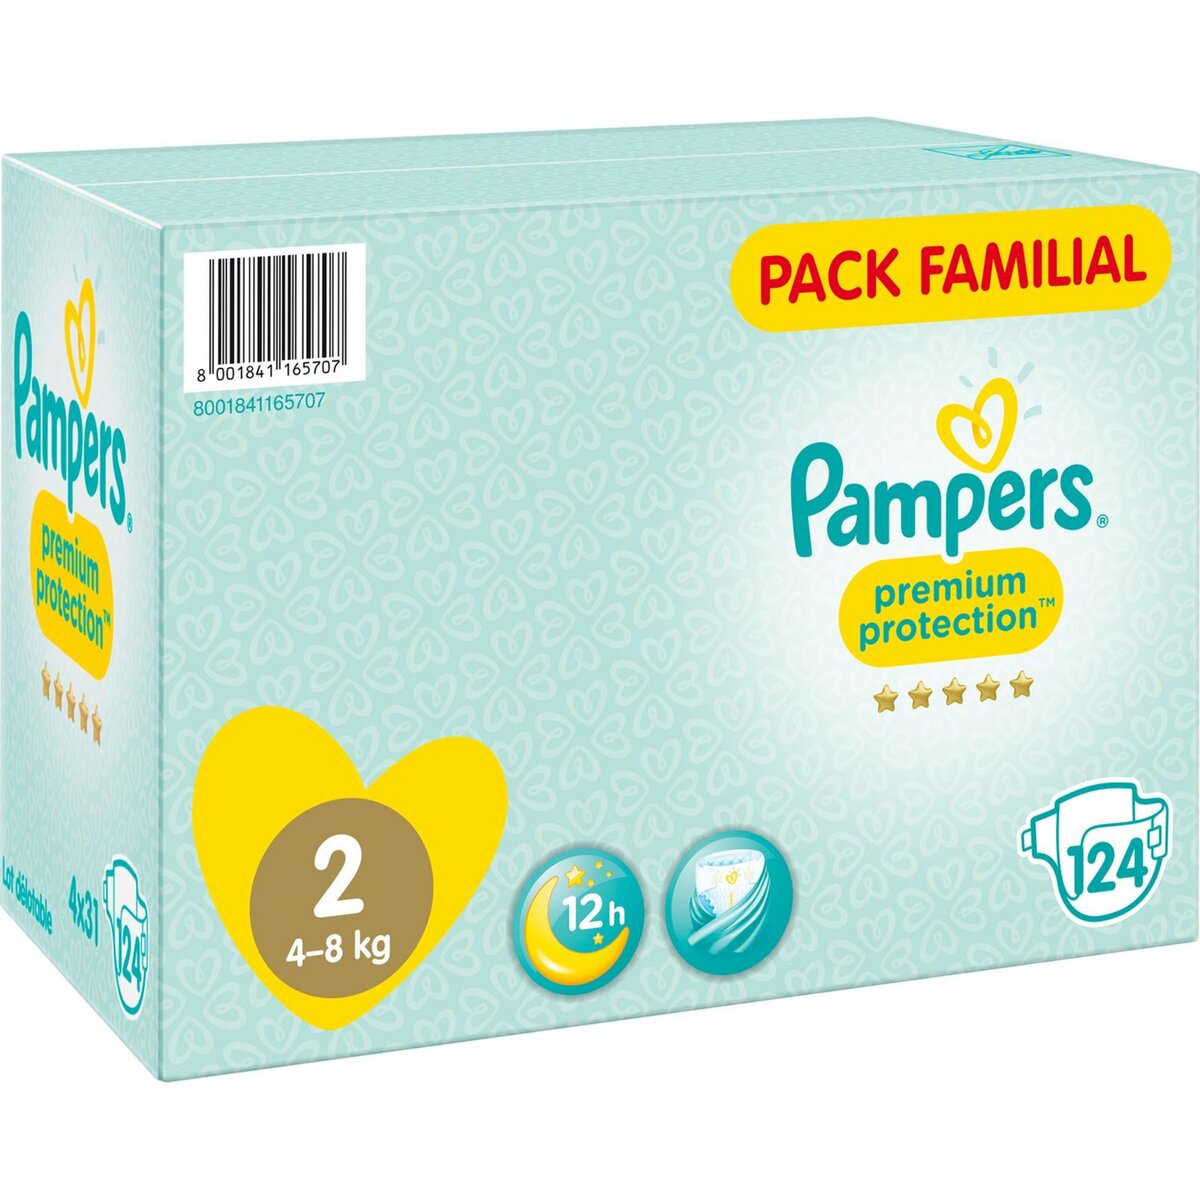 Pampers Couches Bébé - Premium Care - Jumbo Pack Junior- Taille 5 - 11/25Kg  - 48Unités à prix pas cher